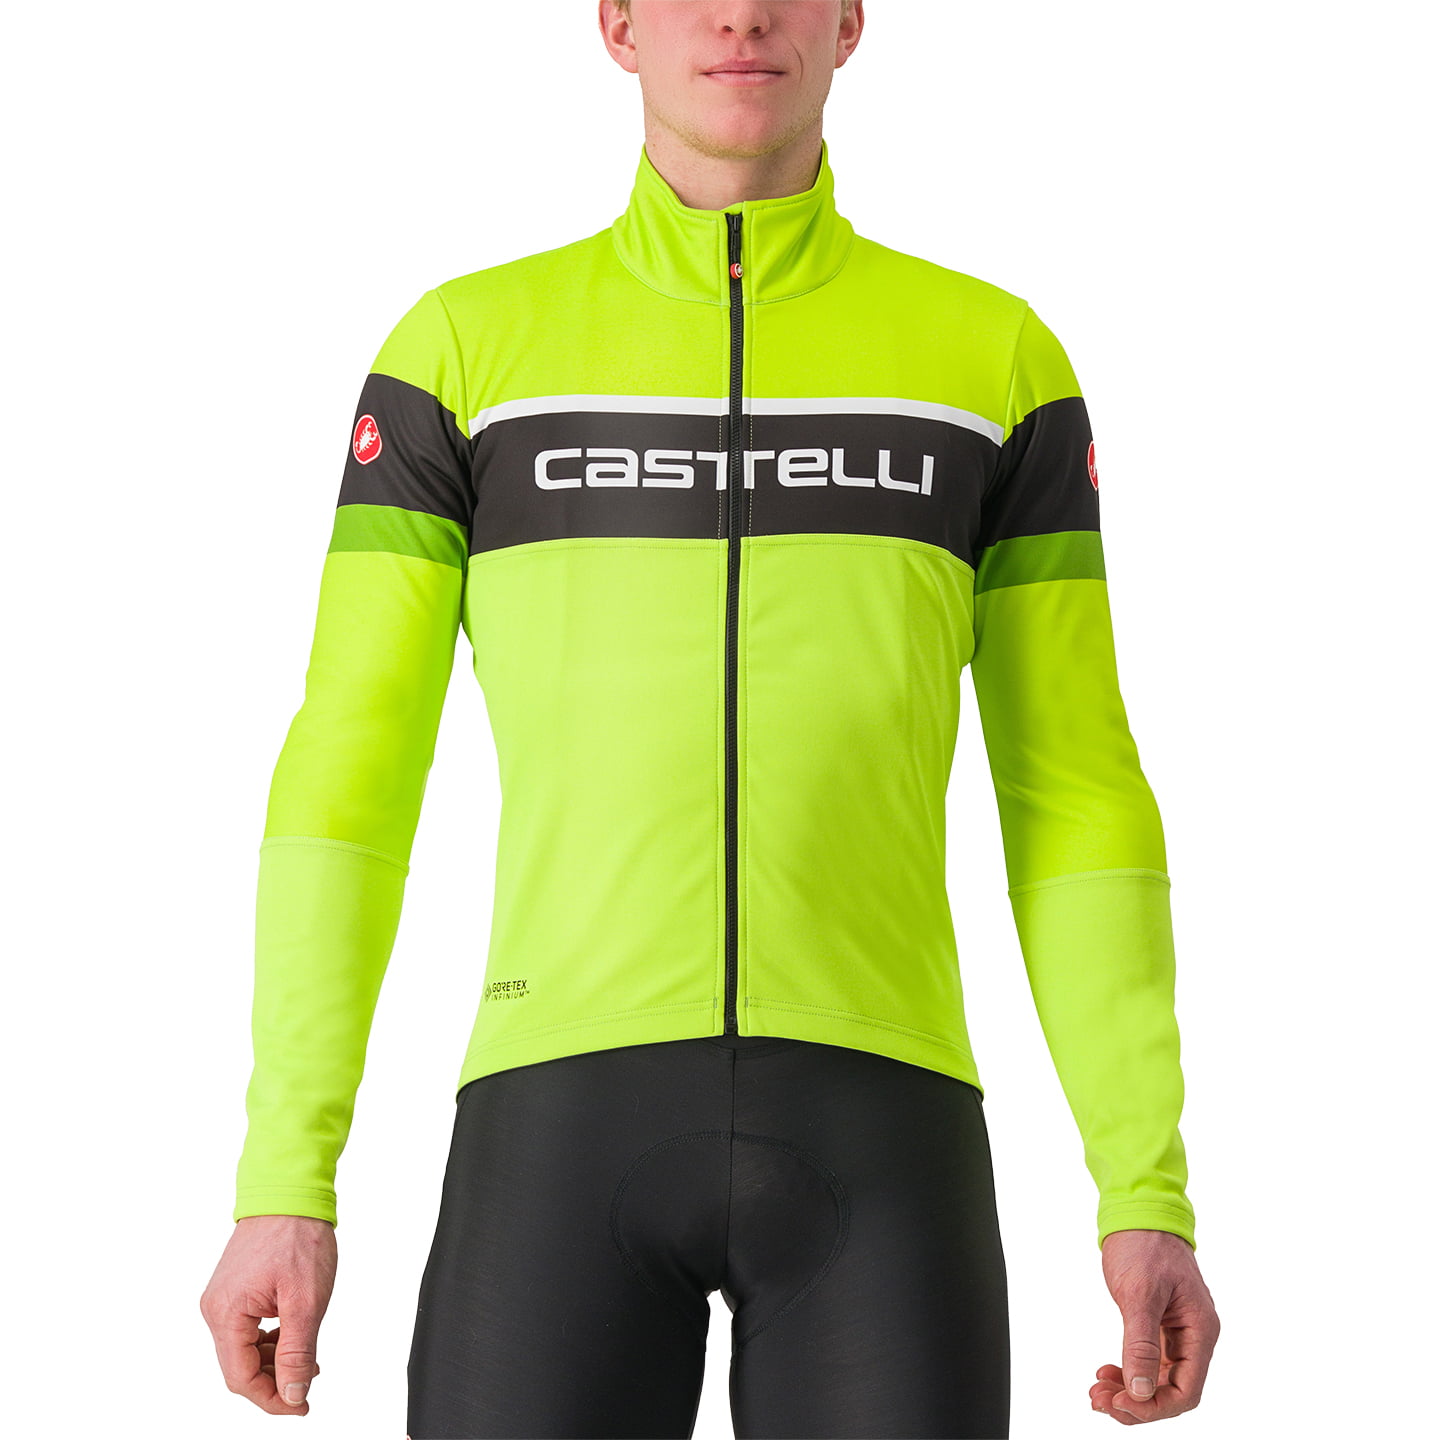 CASTELLI Scorpione 2 Winter Jacket Thermal Jacket, for men, size S, Winter jacket, Bike gear